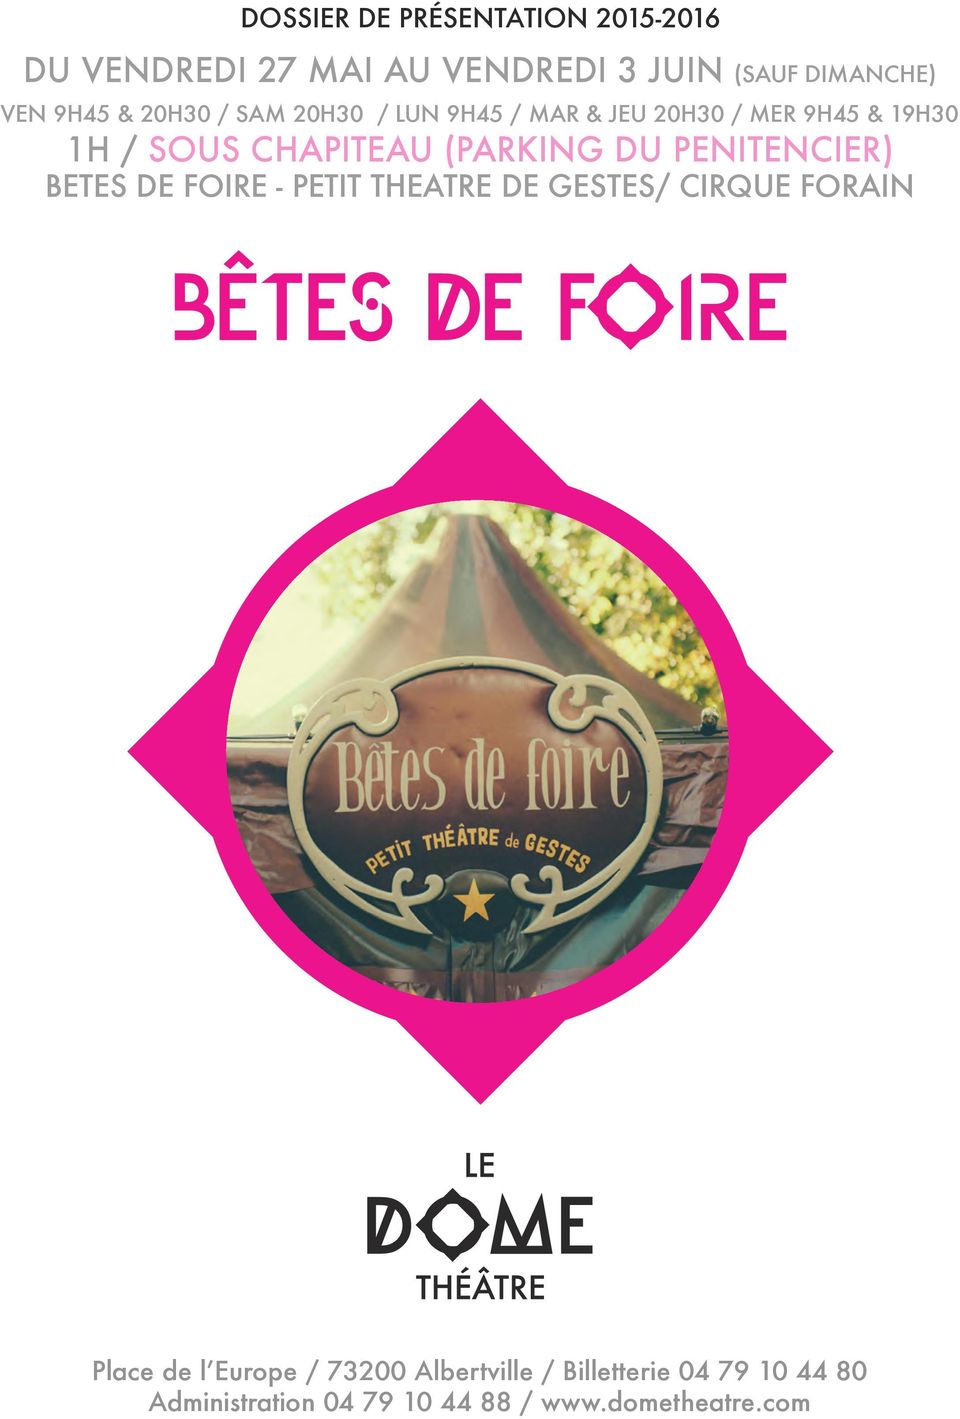 (PARKING DU PENITENCIER) BETES DE FOIRE - PETIT THEATRE DE GESTES/ CIRQUE FORAIN Place de l